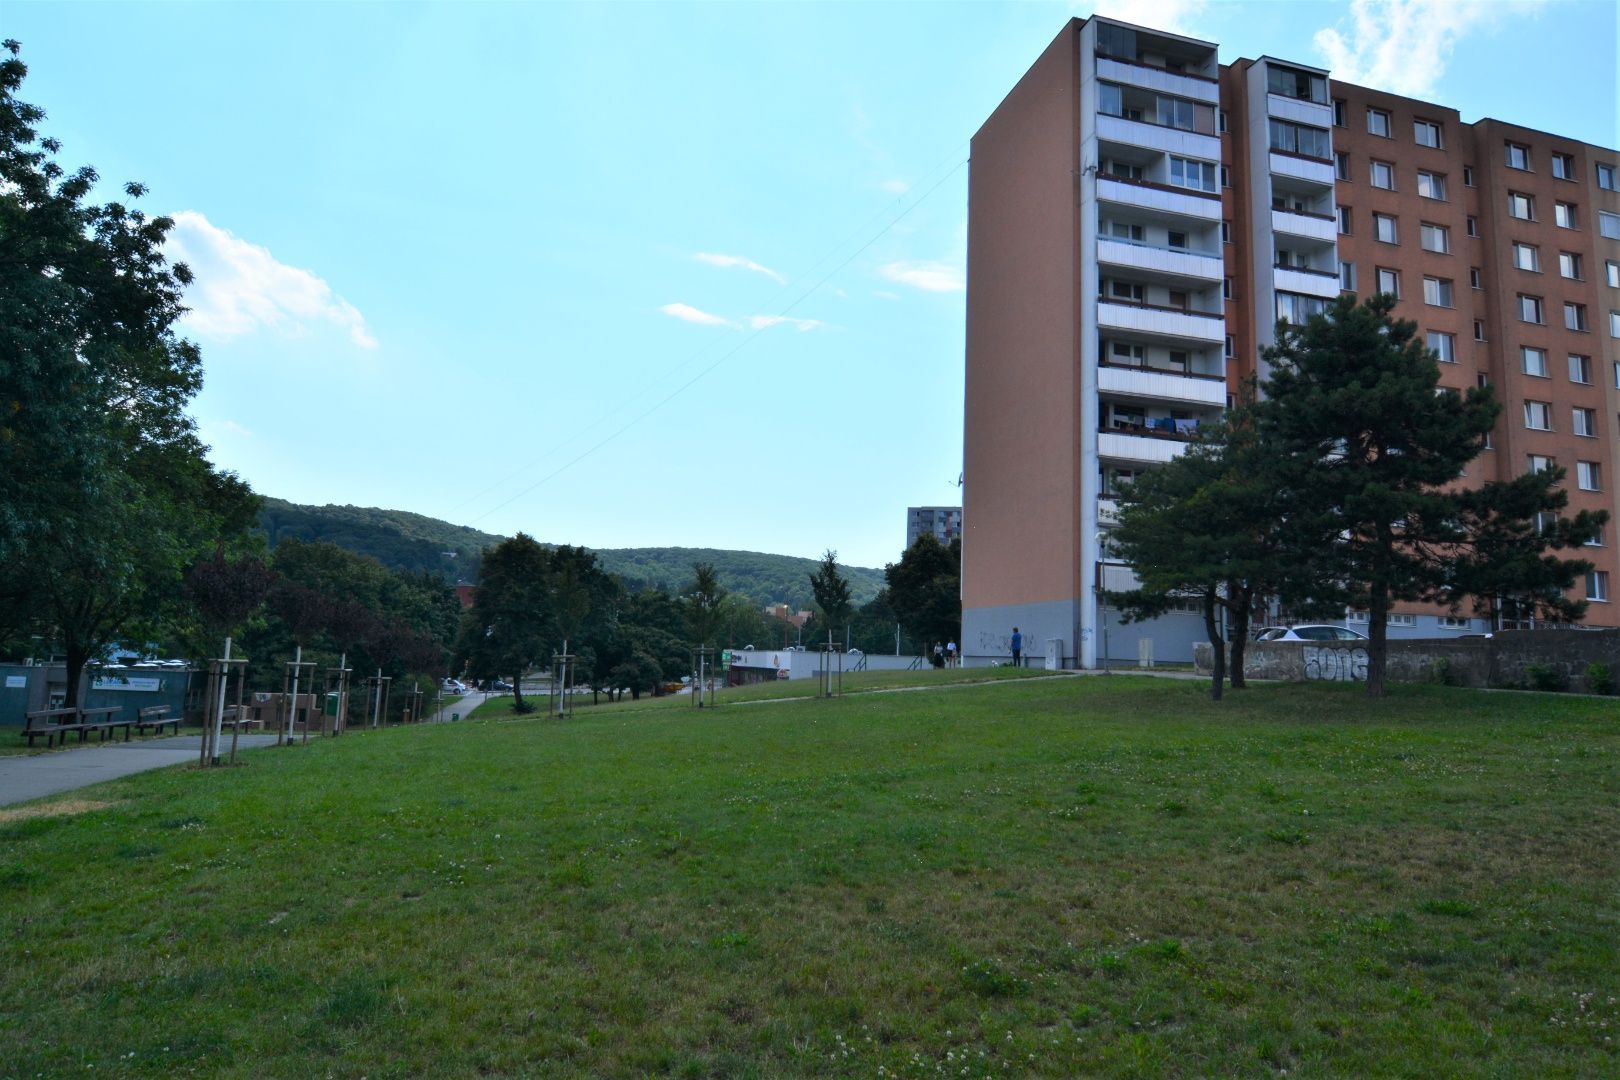 BOND REALITY – Slnečný 4 izbový byt s priestrannou loggiou v tichej lokalite Landauova ul., Dúbravka.